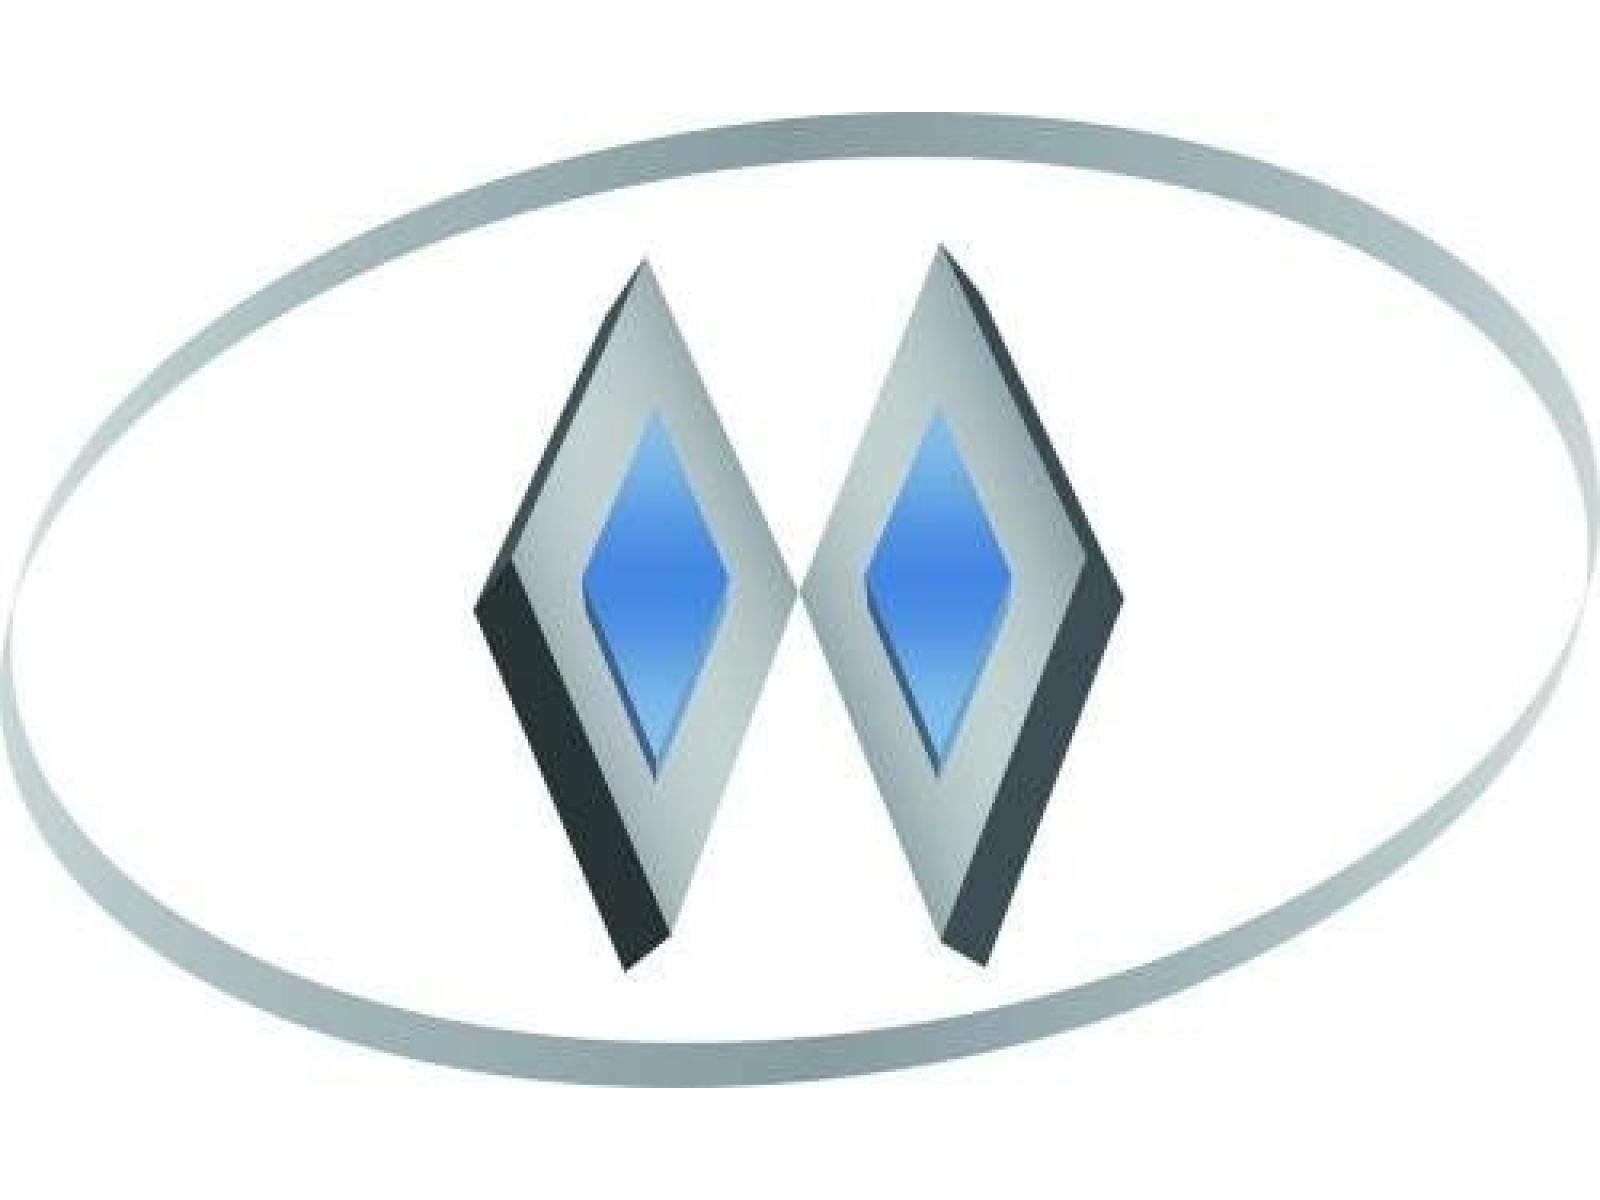 ALCADENT - logo.JPG